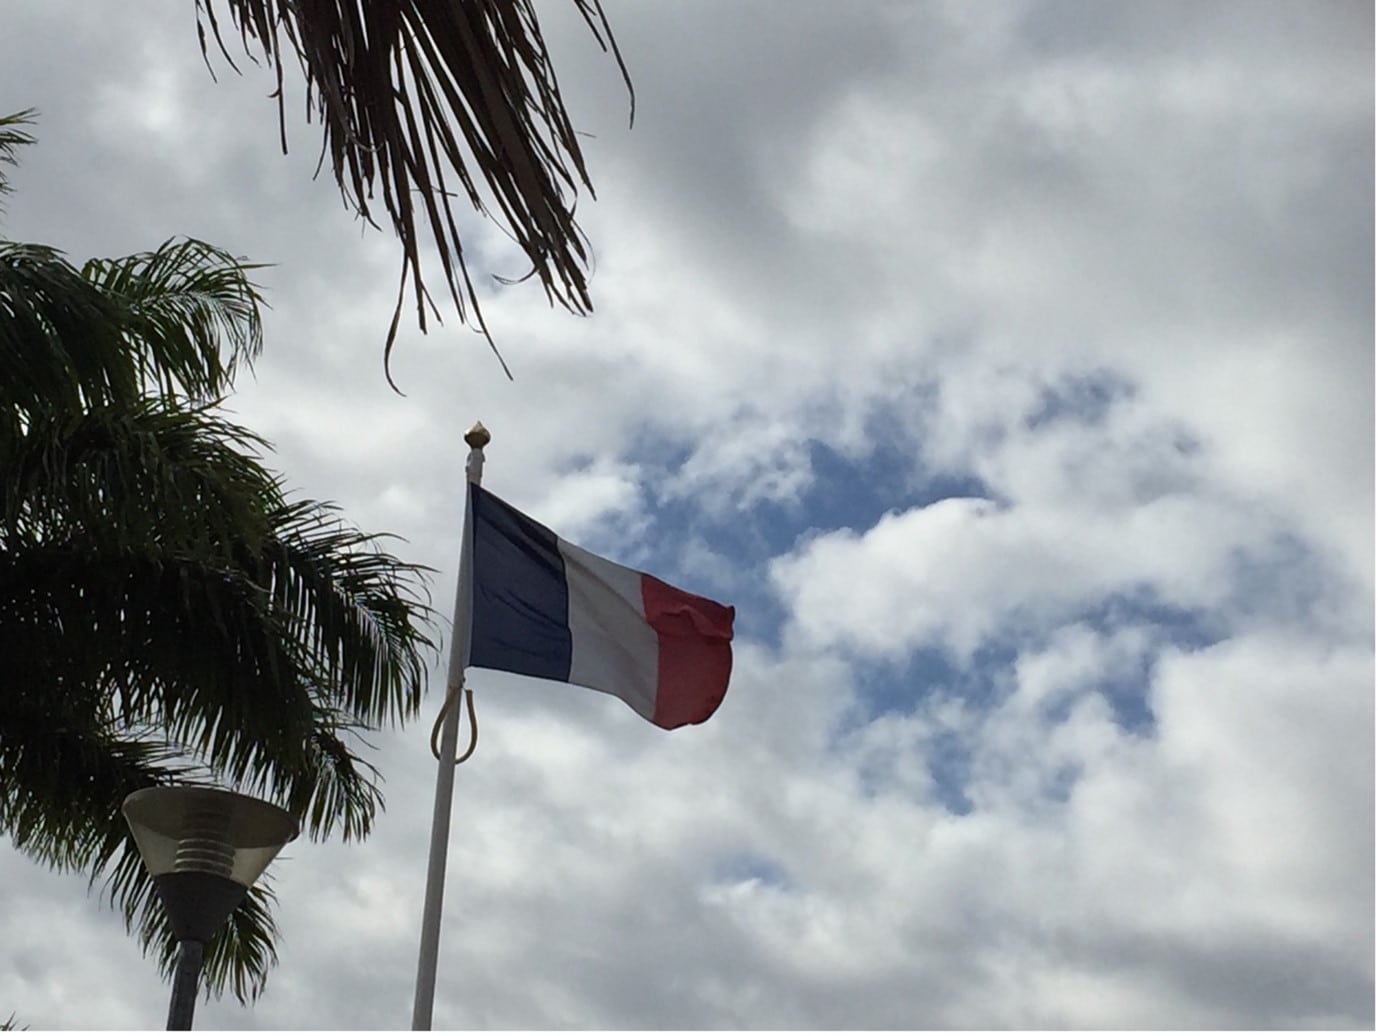 Le drapeau français flotte à Nouville, près de l’ancien bagne de Nouméa (octobre 2019). La Nouvelle-Calédonie ne faisant pas partie de l’Union européenne, le pavillon tricolore n’est pas accompagné de celui aux douze étoiles. (c) ED